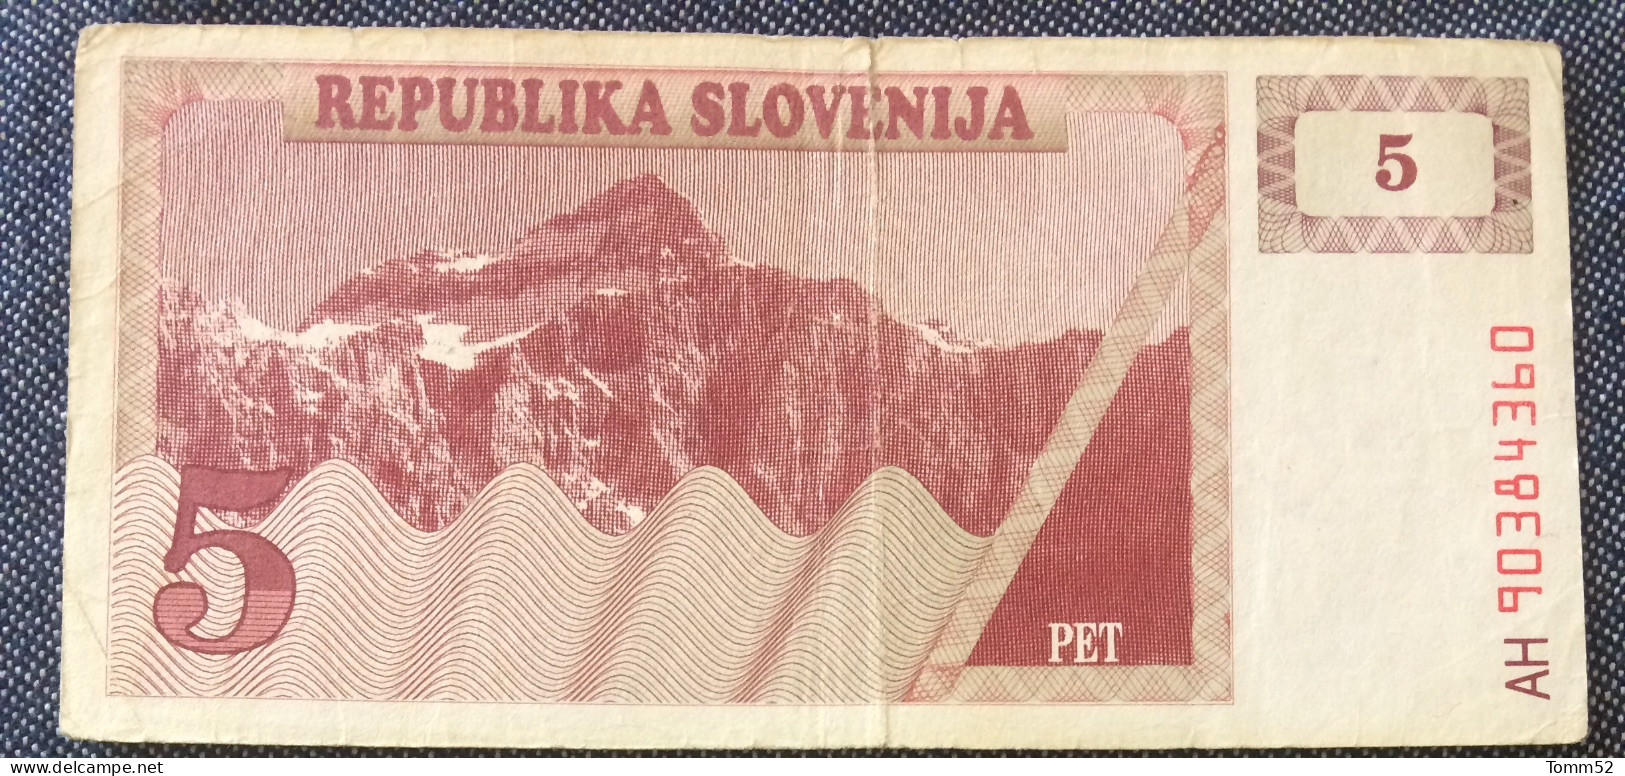 SLOVENIA 5  Tolara - Slovénie